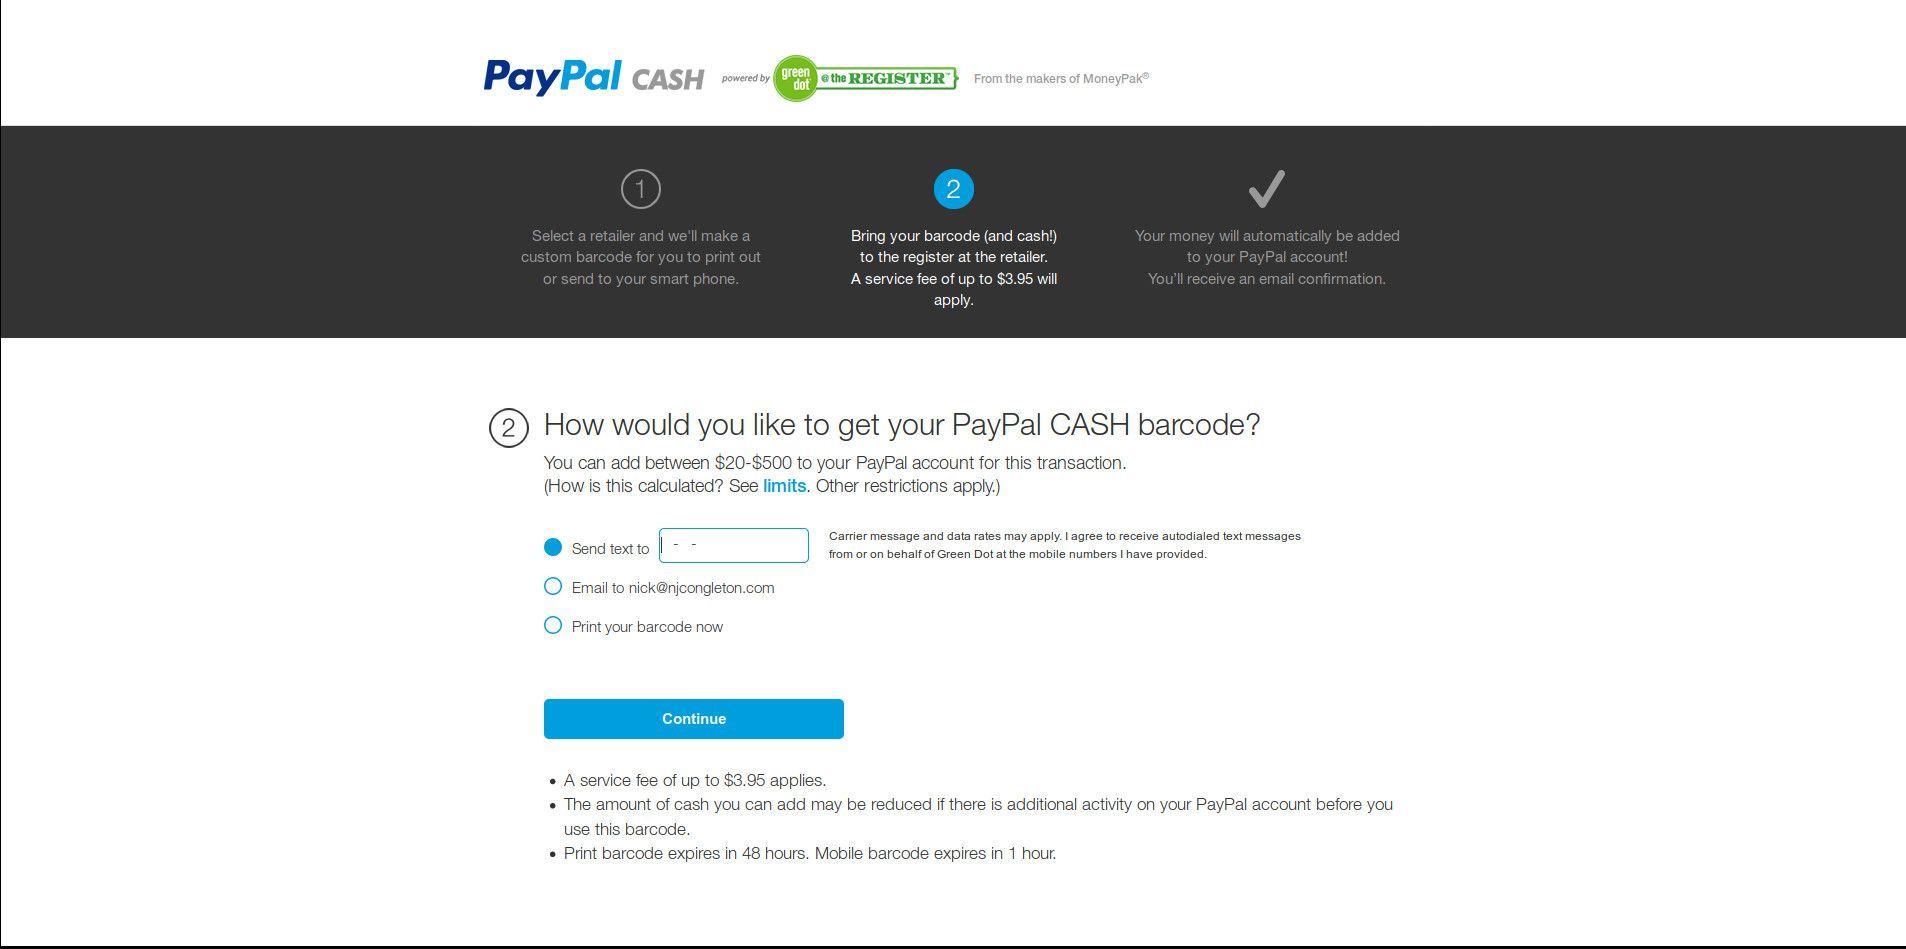 Получите ваш денежный код PayPal